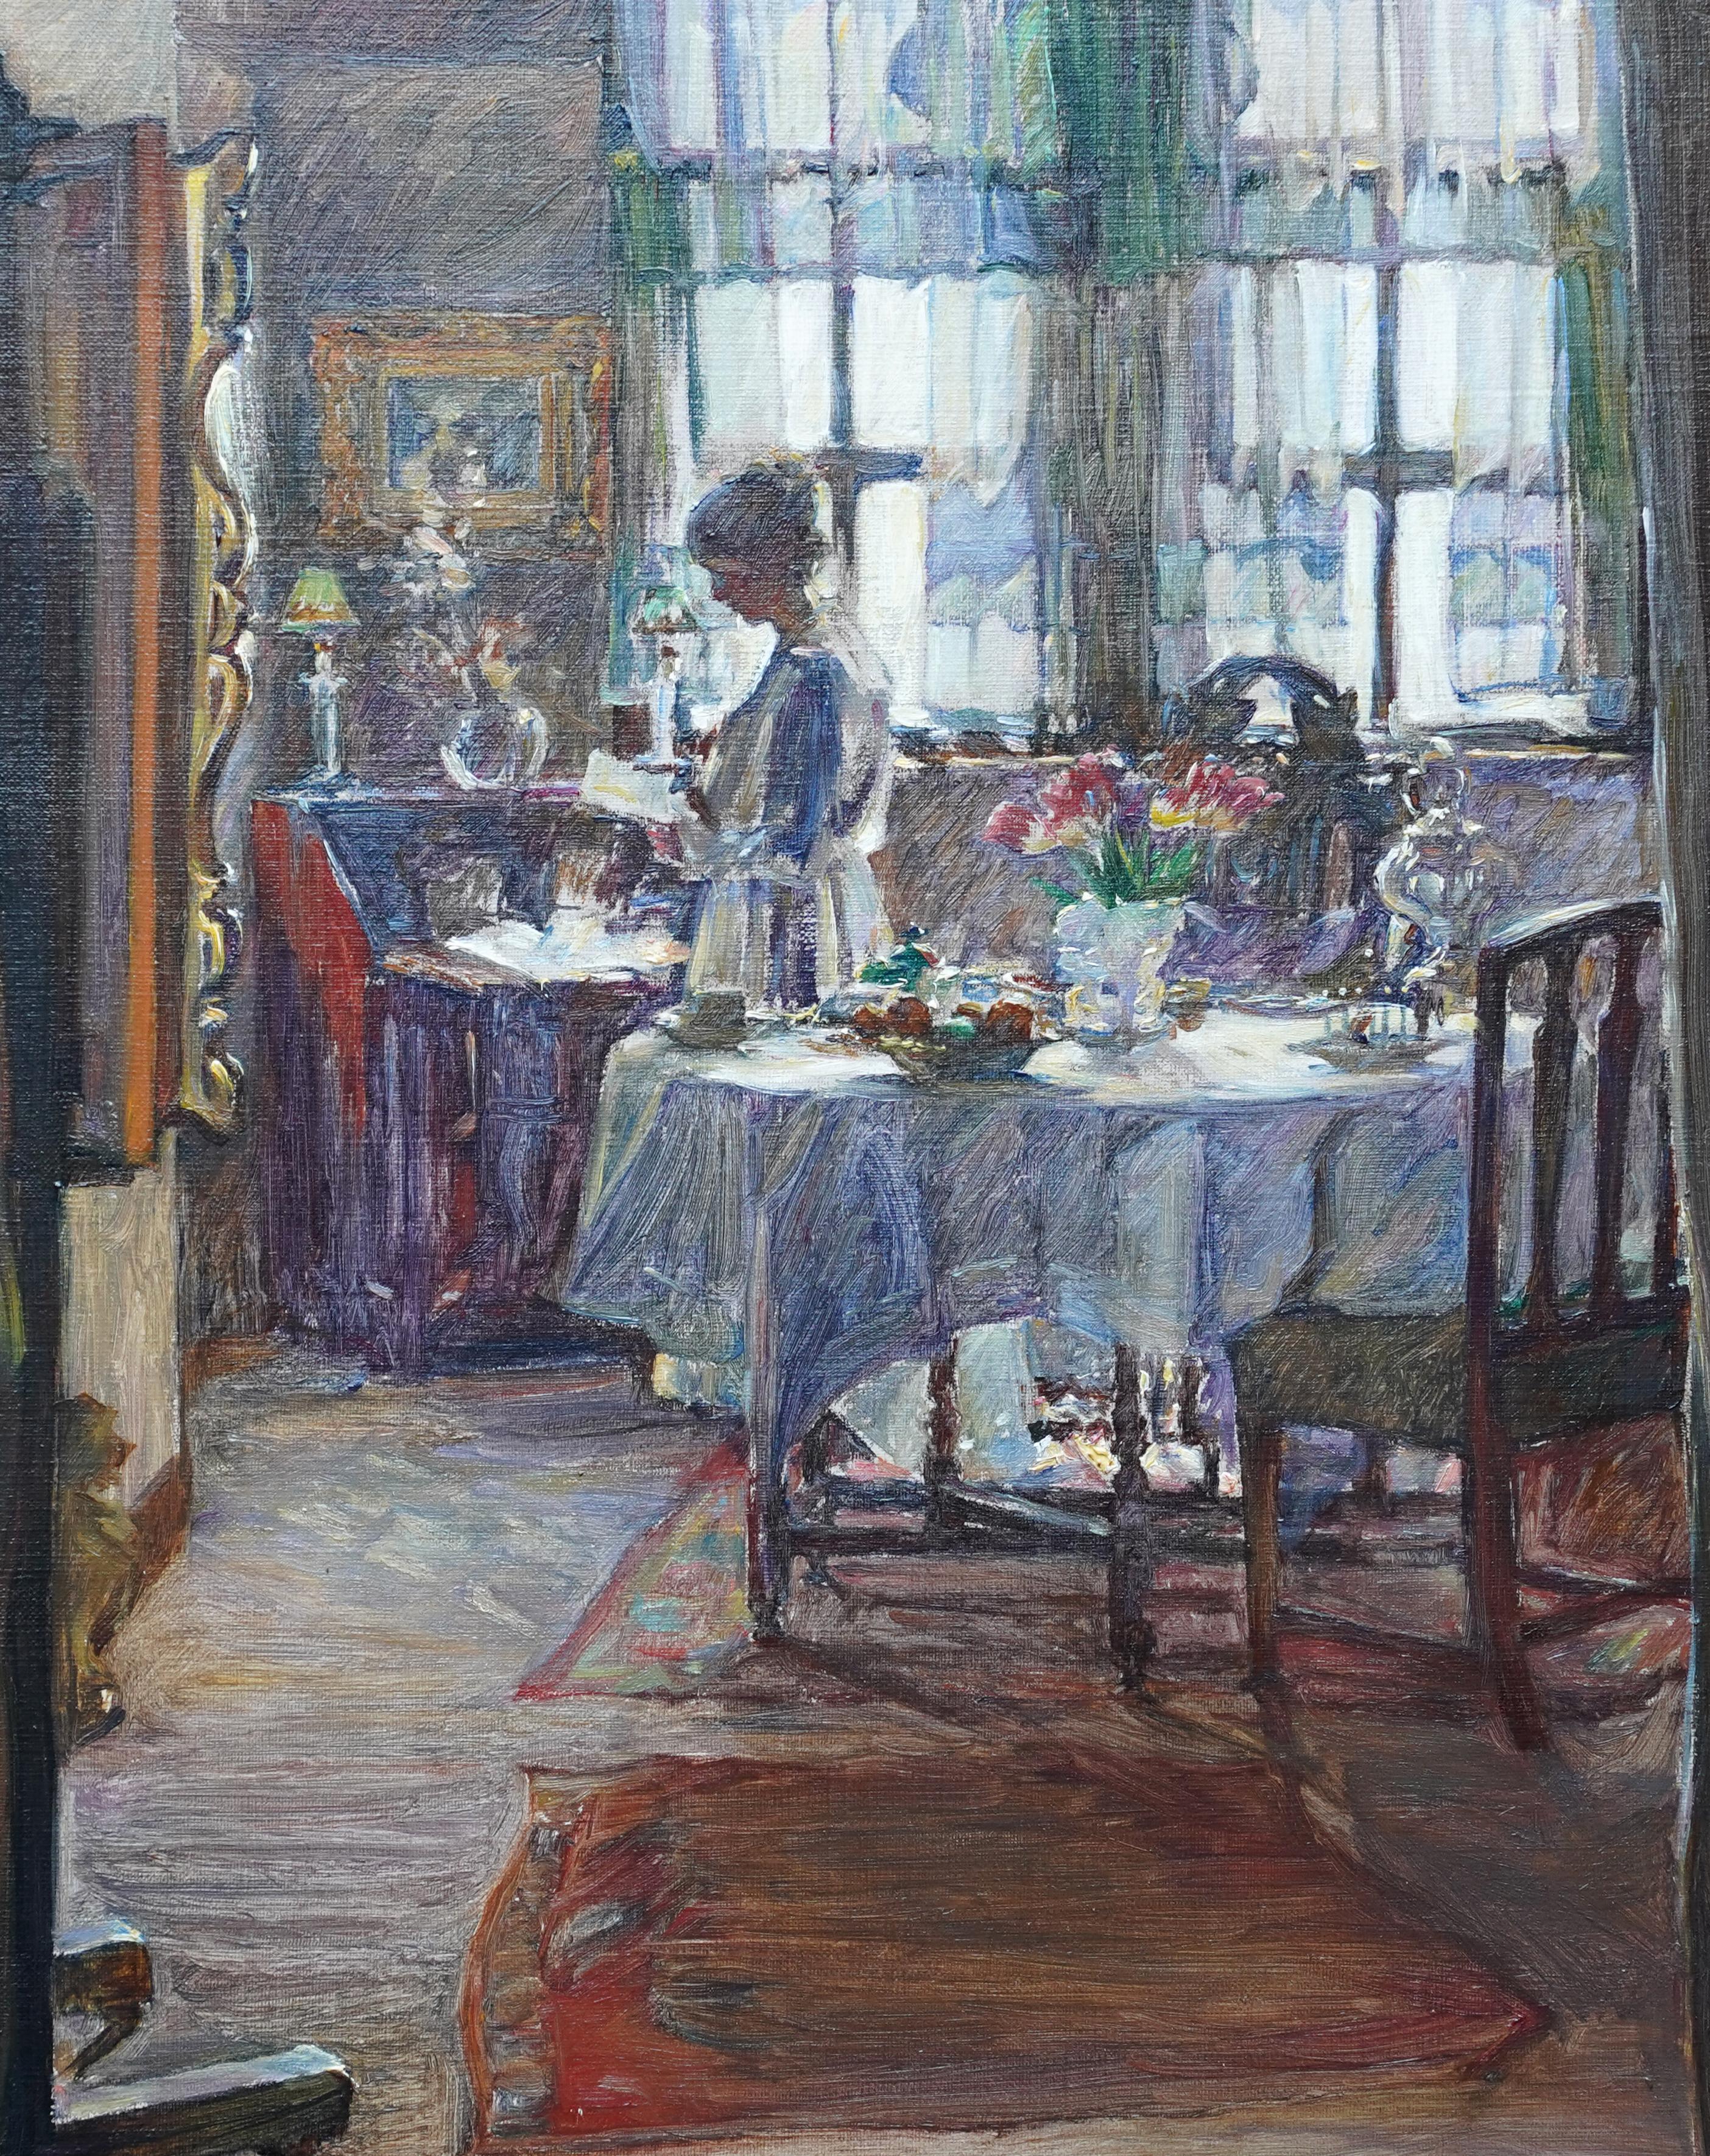 Interieur mit Lady Reading – schottisches edwardianisches Porträt-Ölgemälde von 1910 (Impressionismus), Painting, von Annie Rose Laing